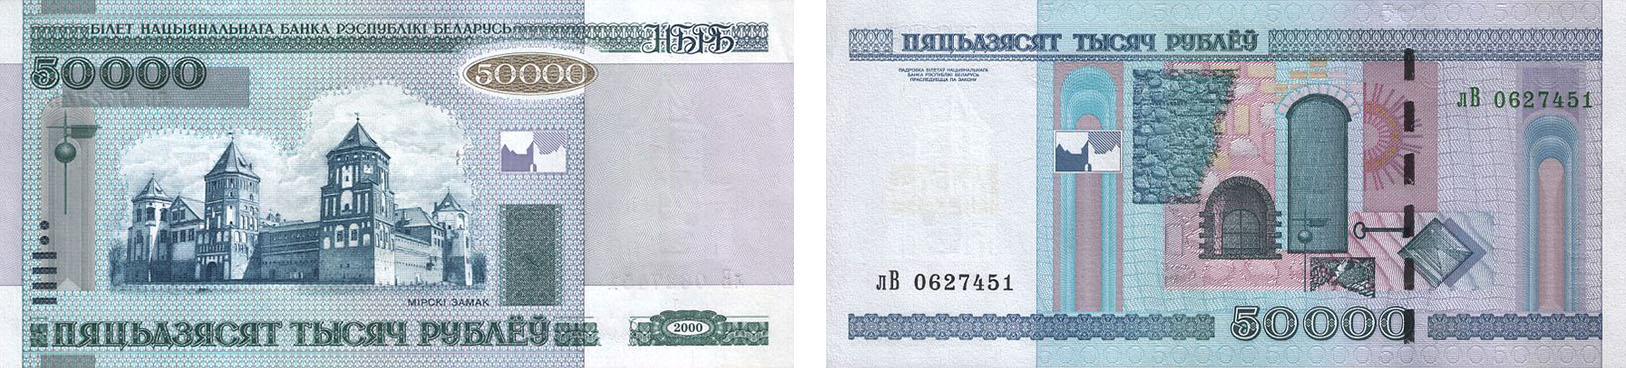 Сколько стоят белорусские рубли 2000. 50000 Белорусских рублей 2000 года в рублях. Беларусь 50000 рублей 2000 года. 50000 Белорусских рублей. Как выглядят 50000 белорусских рублей.